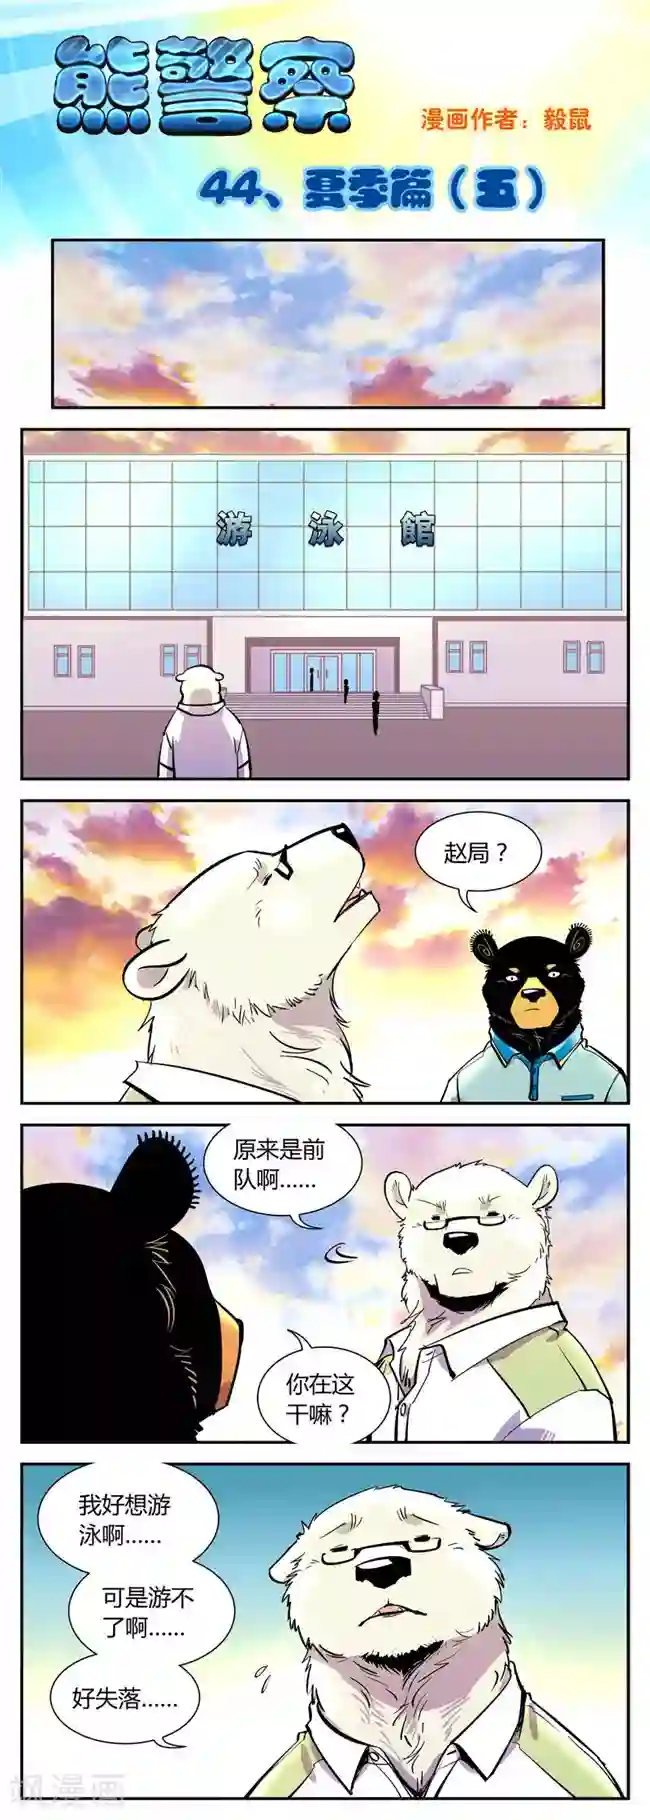 熊警察第44话 夏季篇(5)